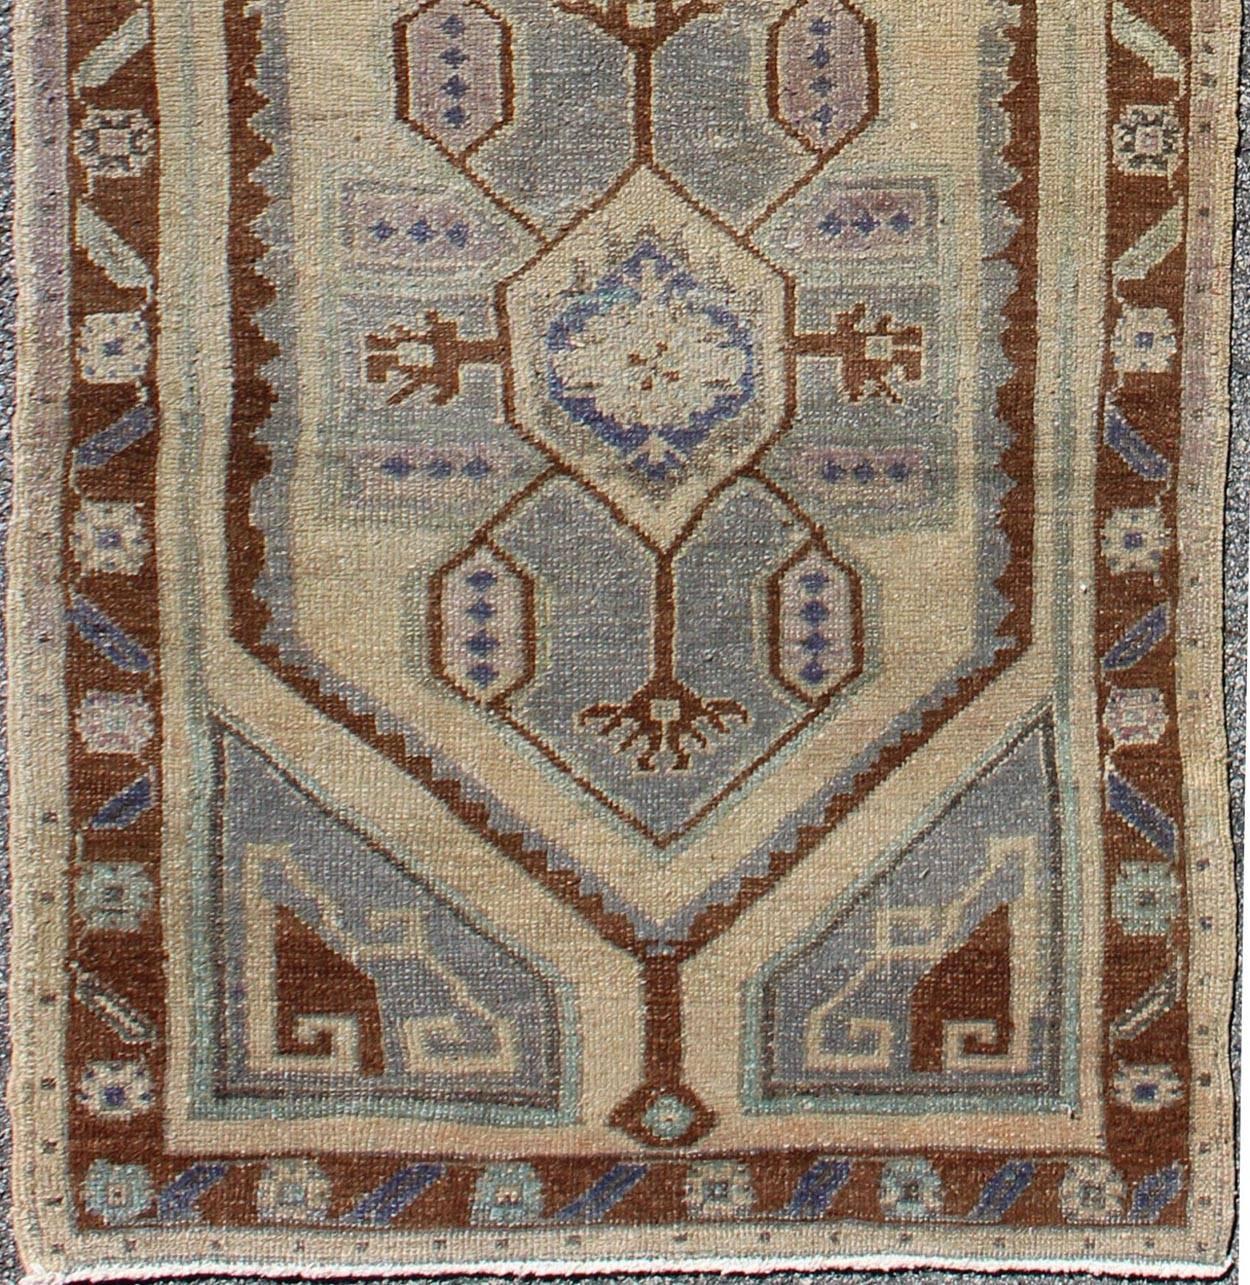 Dieser alte türkische Oushak-Teppich (ca. Mitte des 20. Jahrhunderts) zeigt ein zentrales Doppelmedaillon-Muster in Stammesform sowie Muster aus geometrischen Elementen in den umgebenden Feldern und Bordüren. Die Qualitäten des Teppichs werden durch